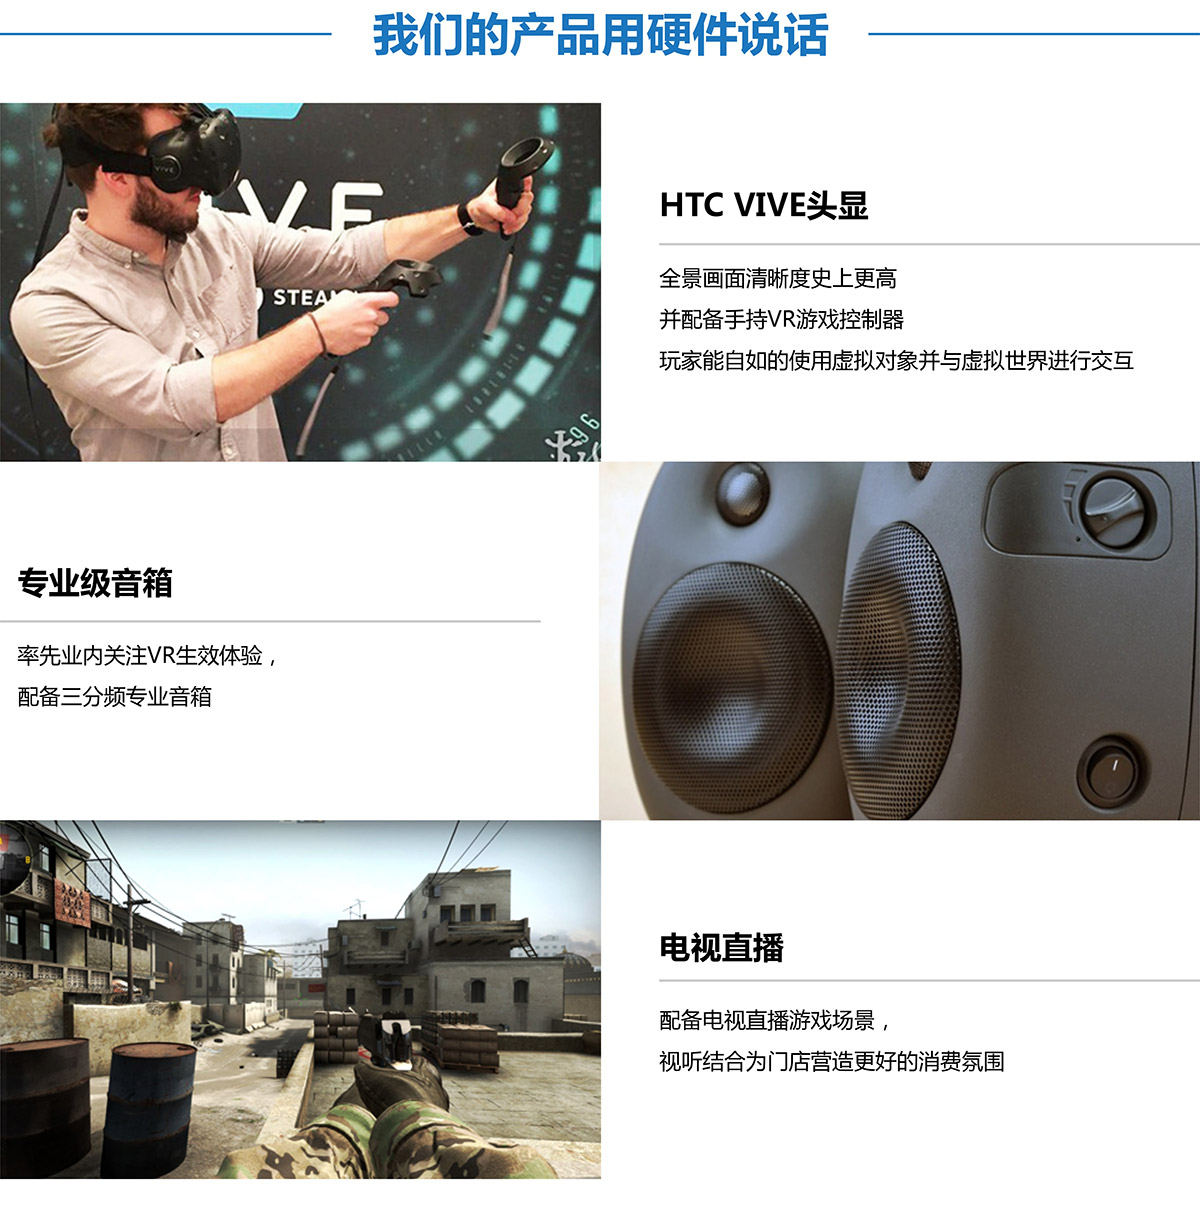 奇影幻境VR探索用硬件说话.jpg